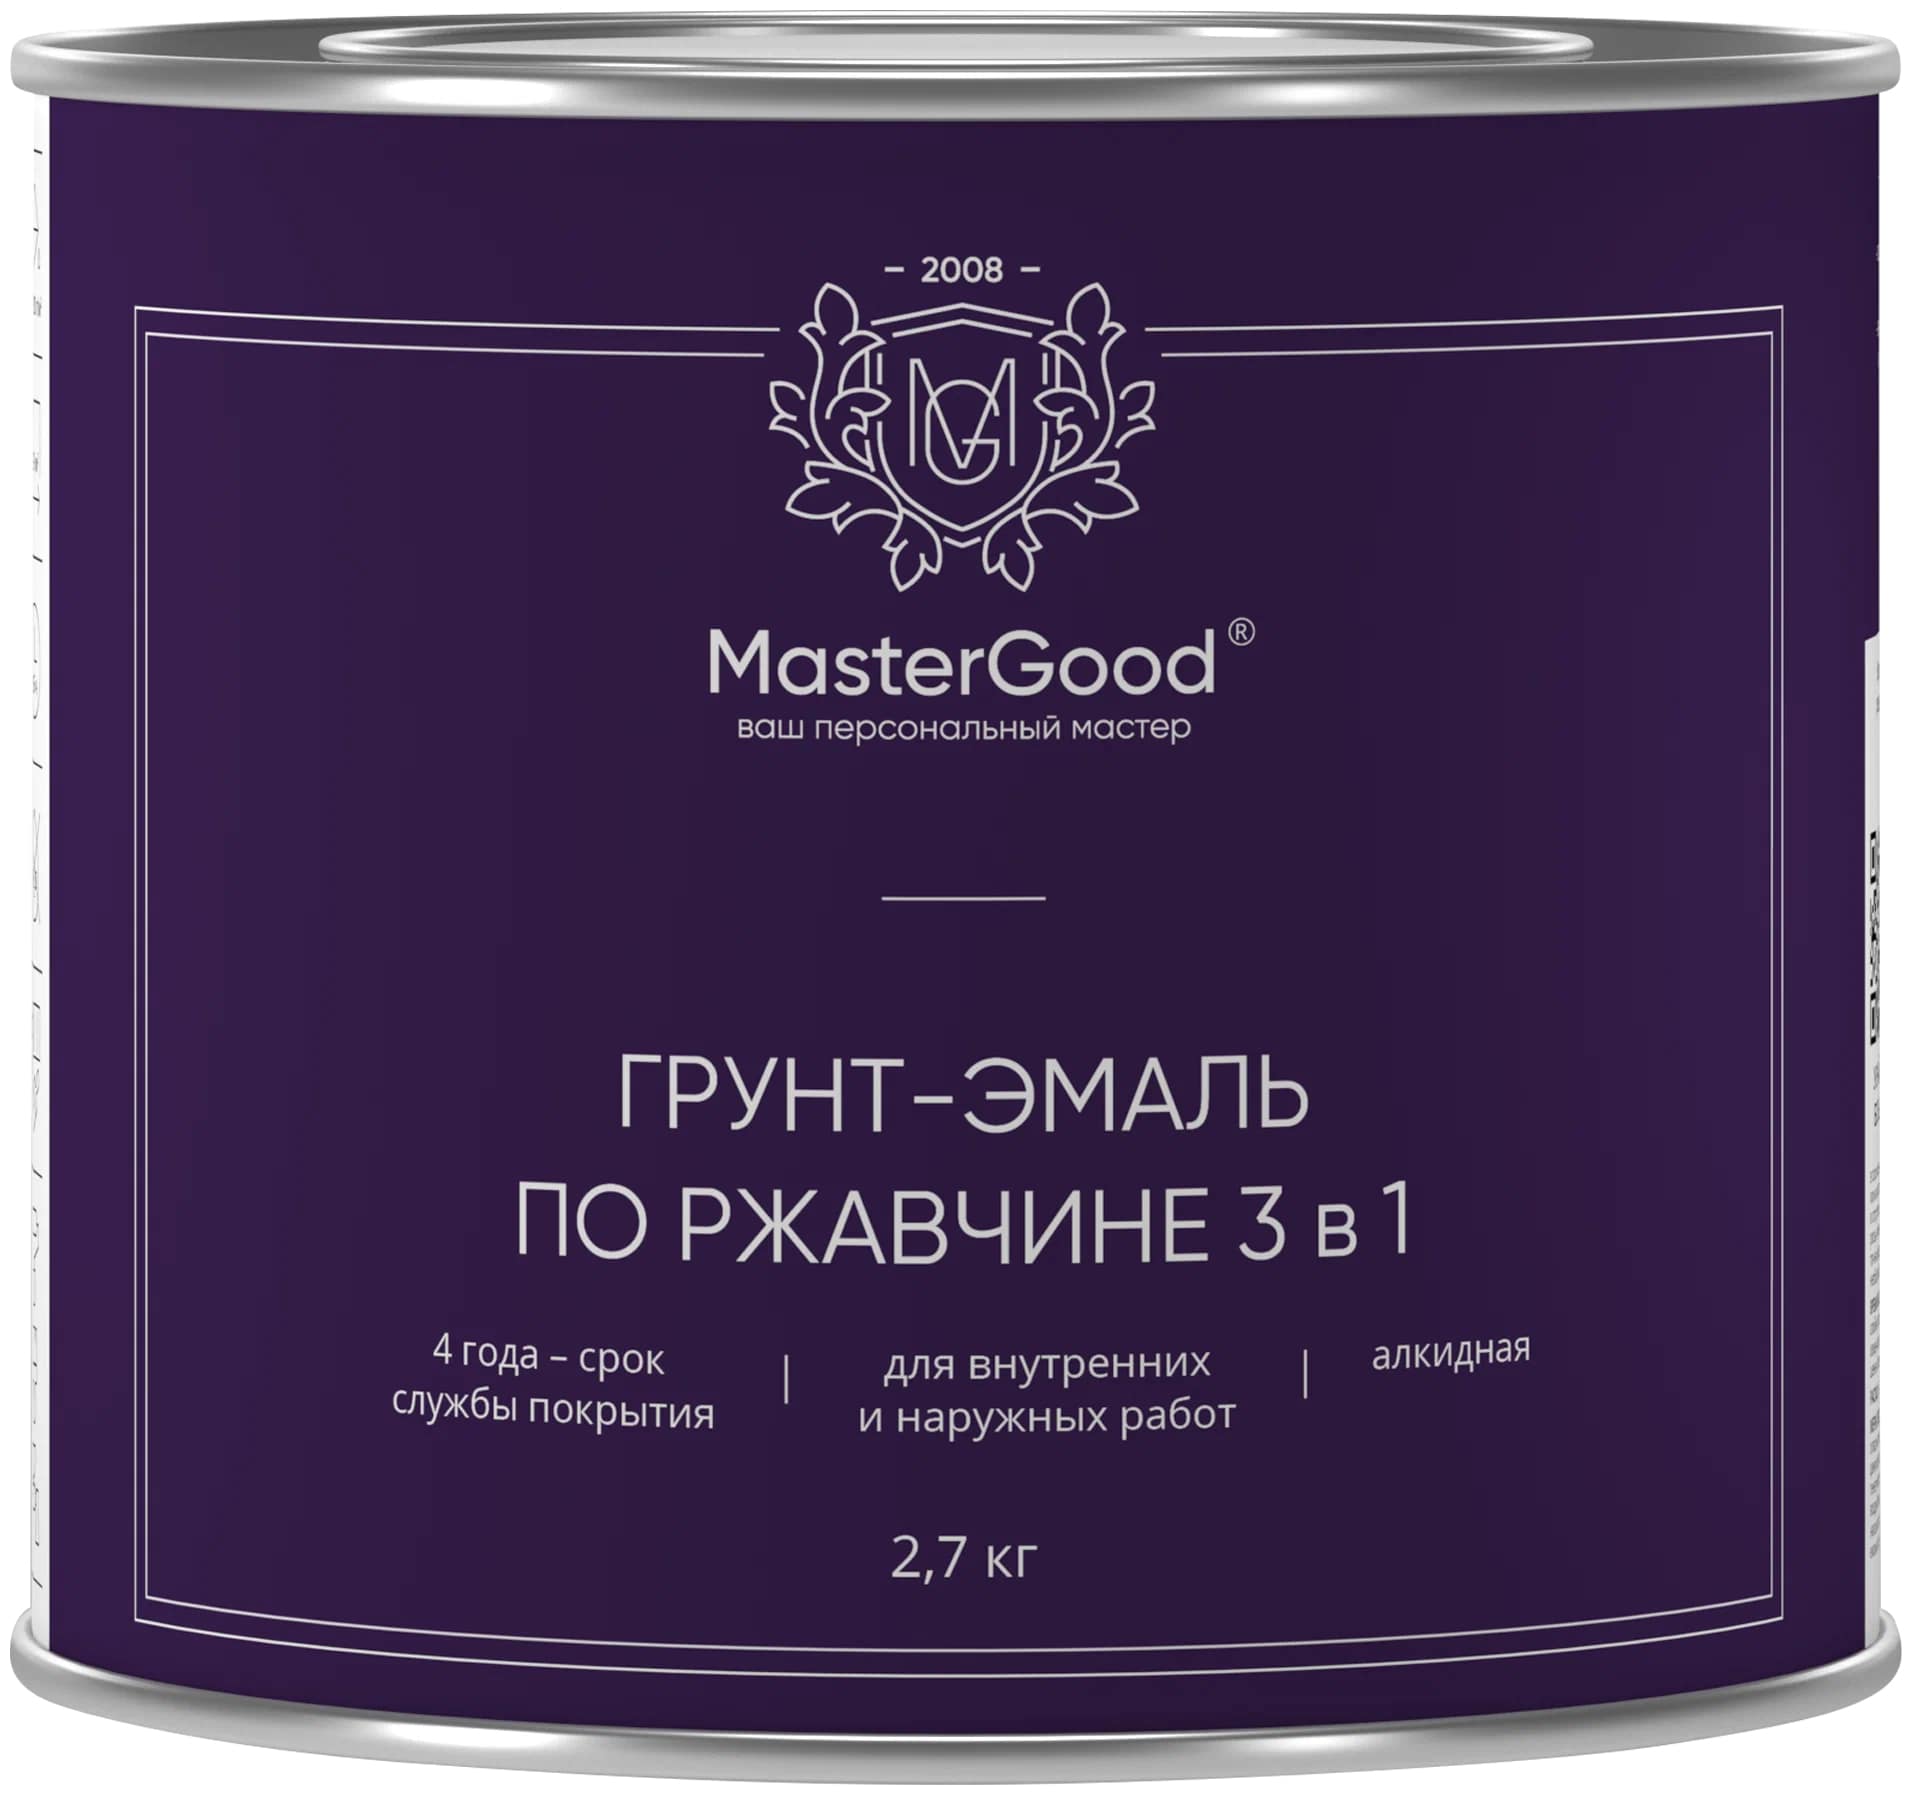 Грунт-эмаль Master Good по ржавчине, 3 в 1, белый, 2,7 кг